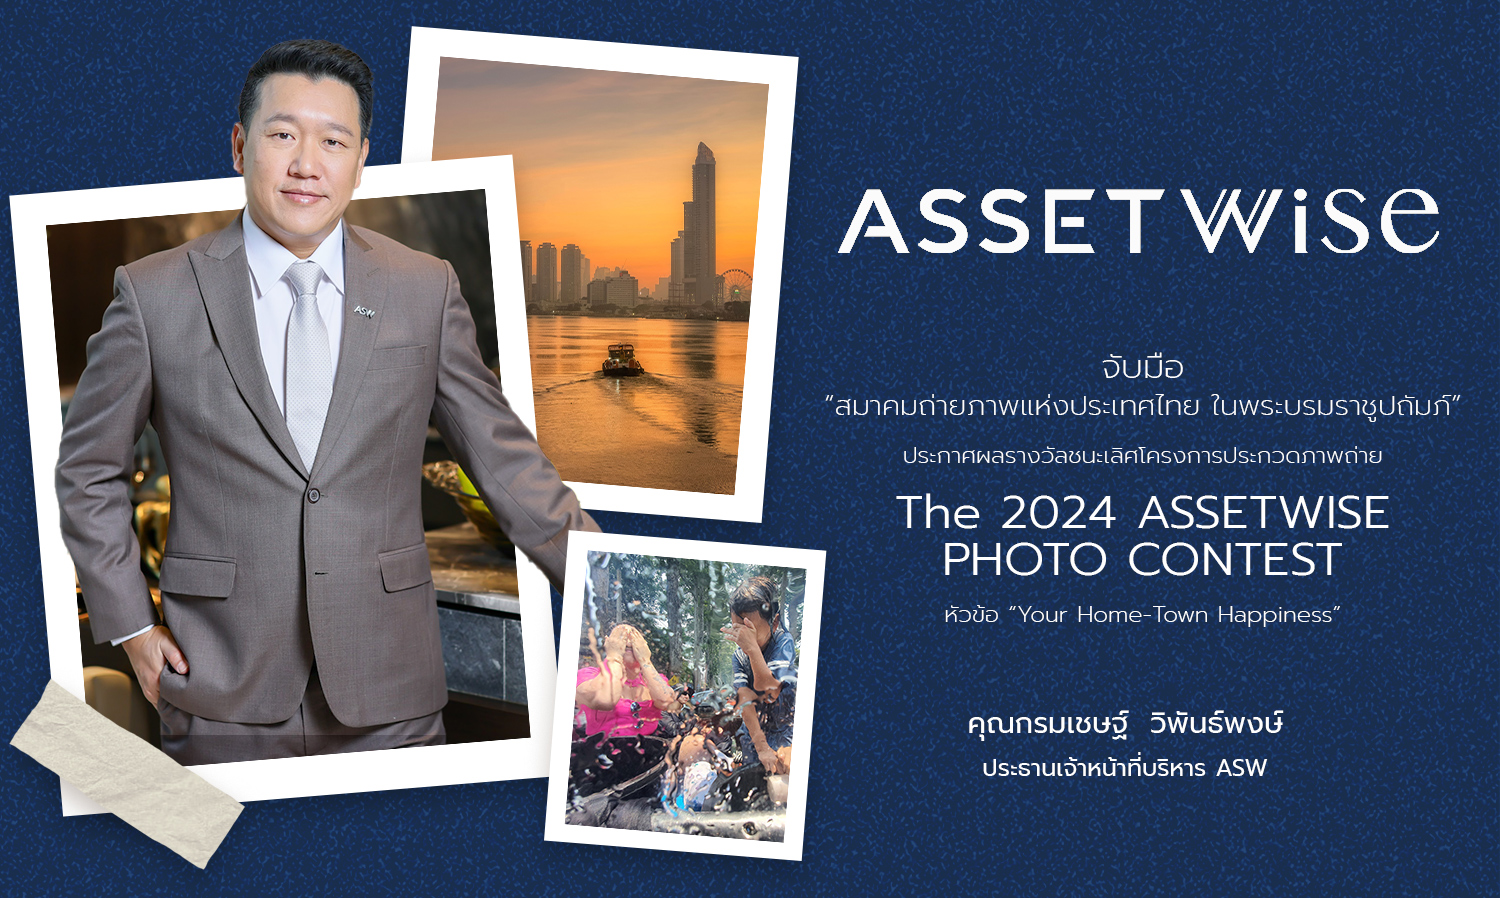 แอสเซทไวส์ จับมือ สมาคมถ่ายภาพแห่งประเทศไทย ในพระบรมราชูปถัมภ์ ประกาศผลรางวัลชนะเลิศโครงการประกวดภาพถ่าย The 2024 ASSETWISE PHOTO CONTEST หัวข้อ Your Home-Town Happiness